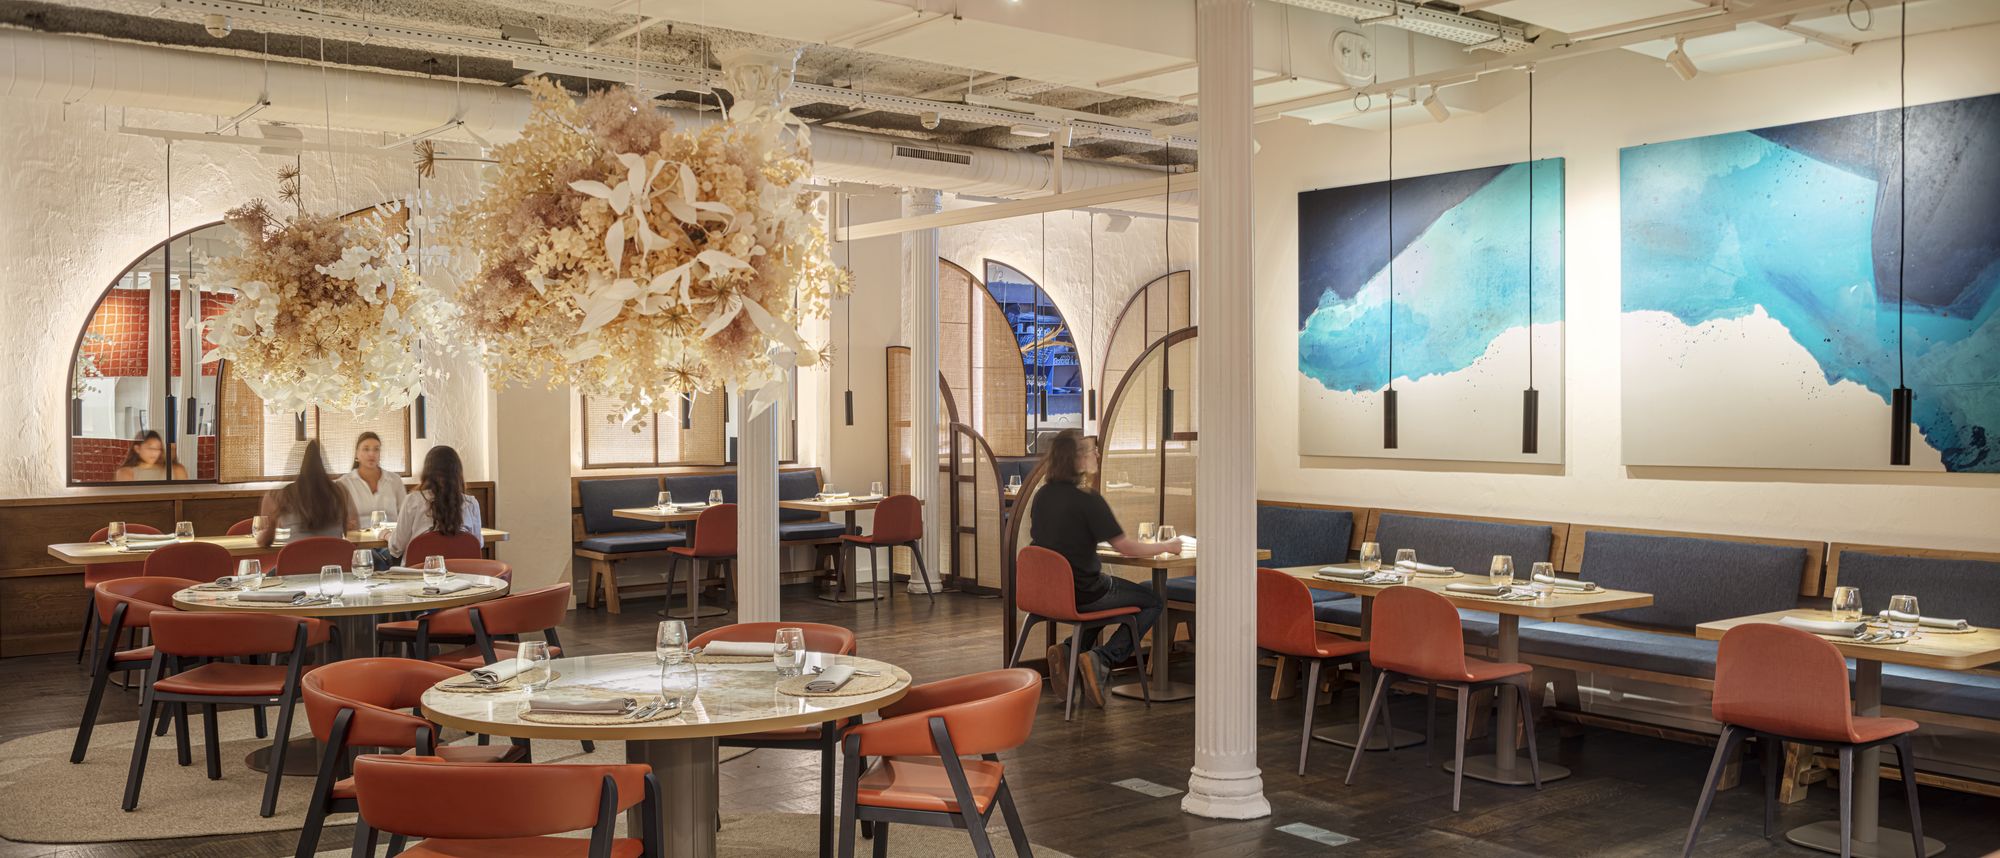 图片[2]|Compartir餐厅|ART-Arrakis | 建筑室内设计的创新与灵感